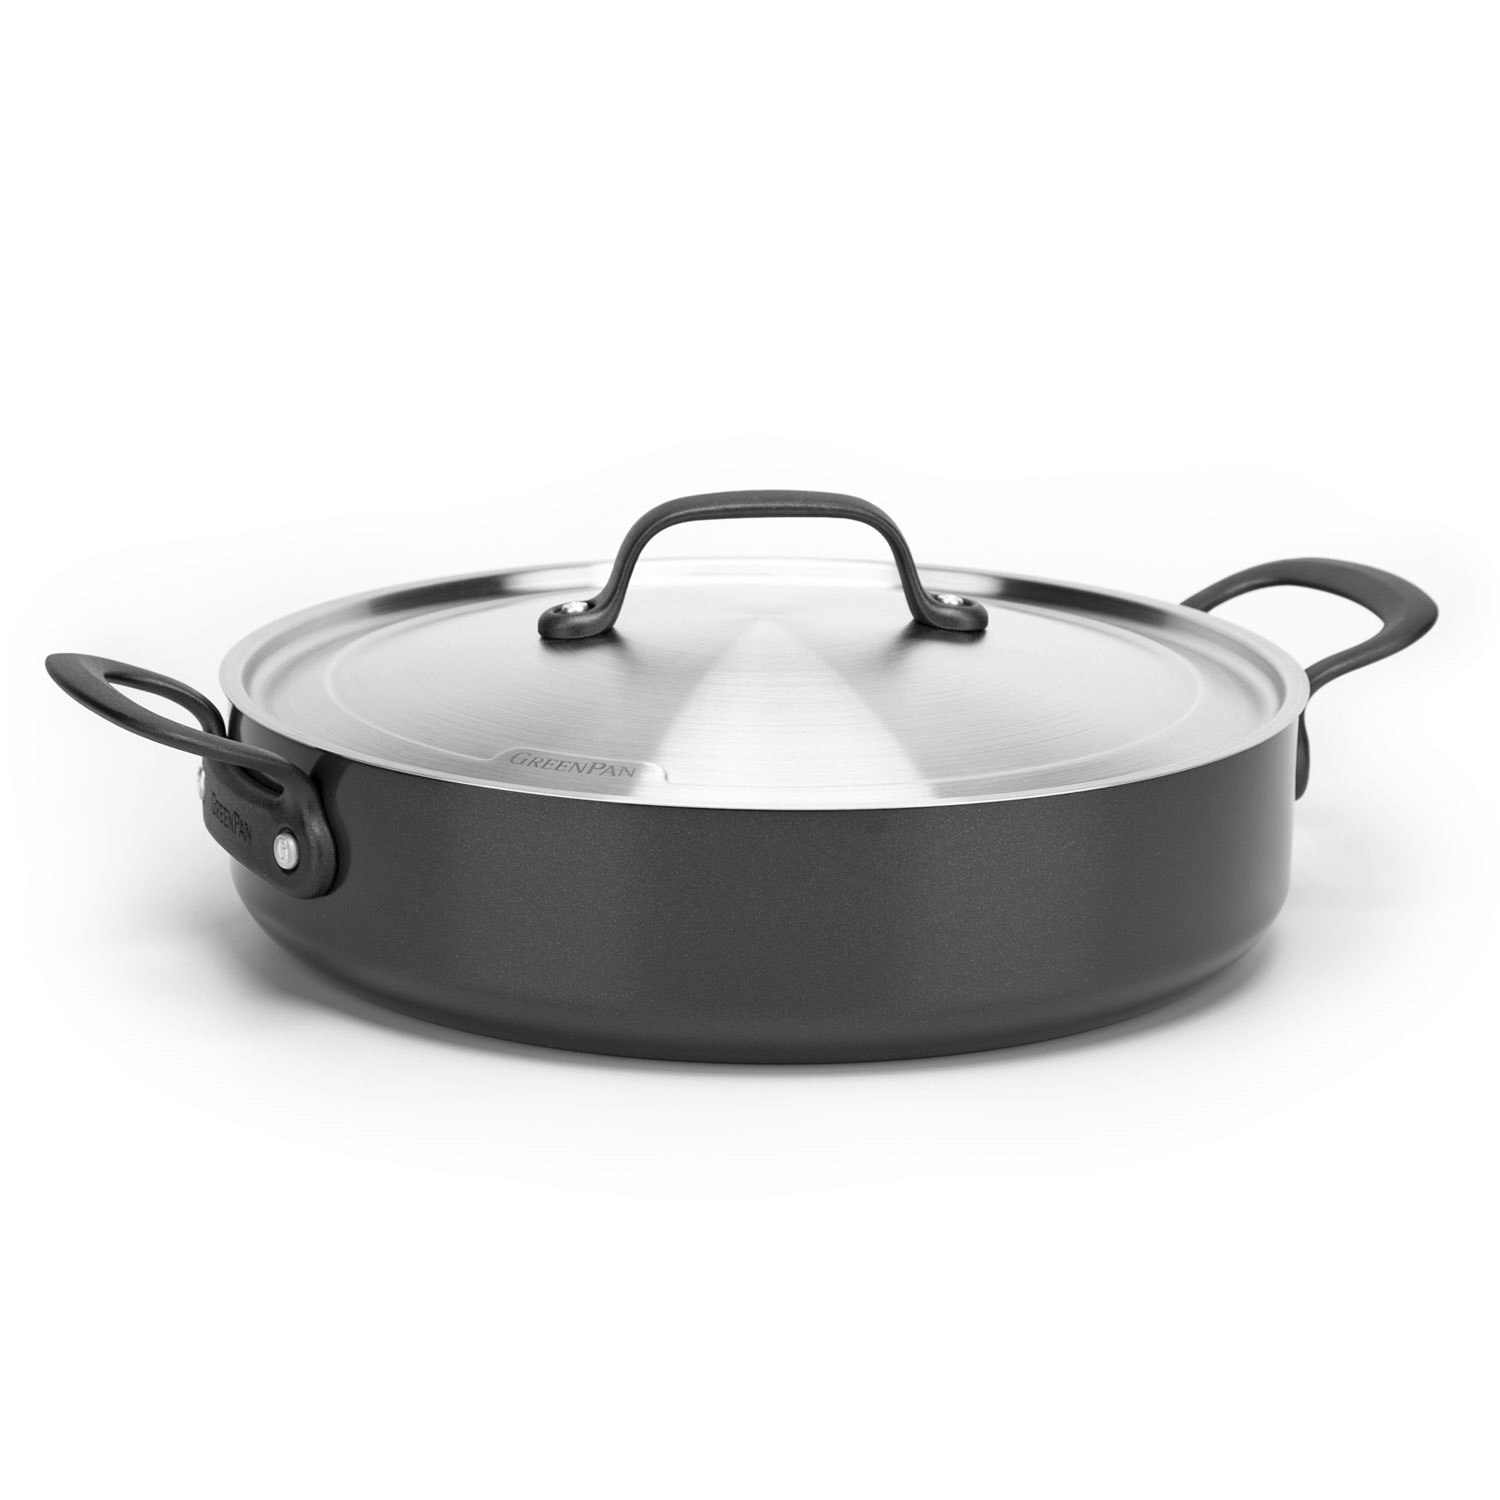 https://royaldesign.com/image/2/greenpan-craft-frying-pan-with-lid-30-cm-0